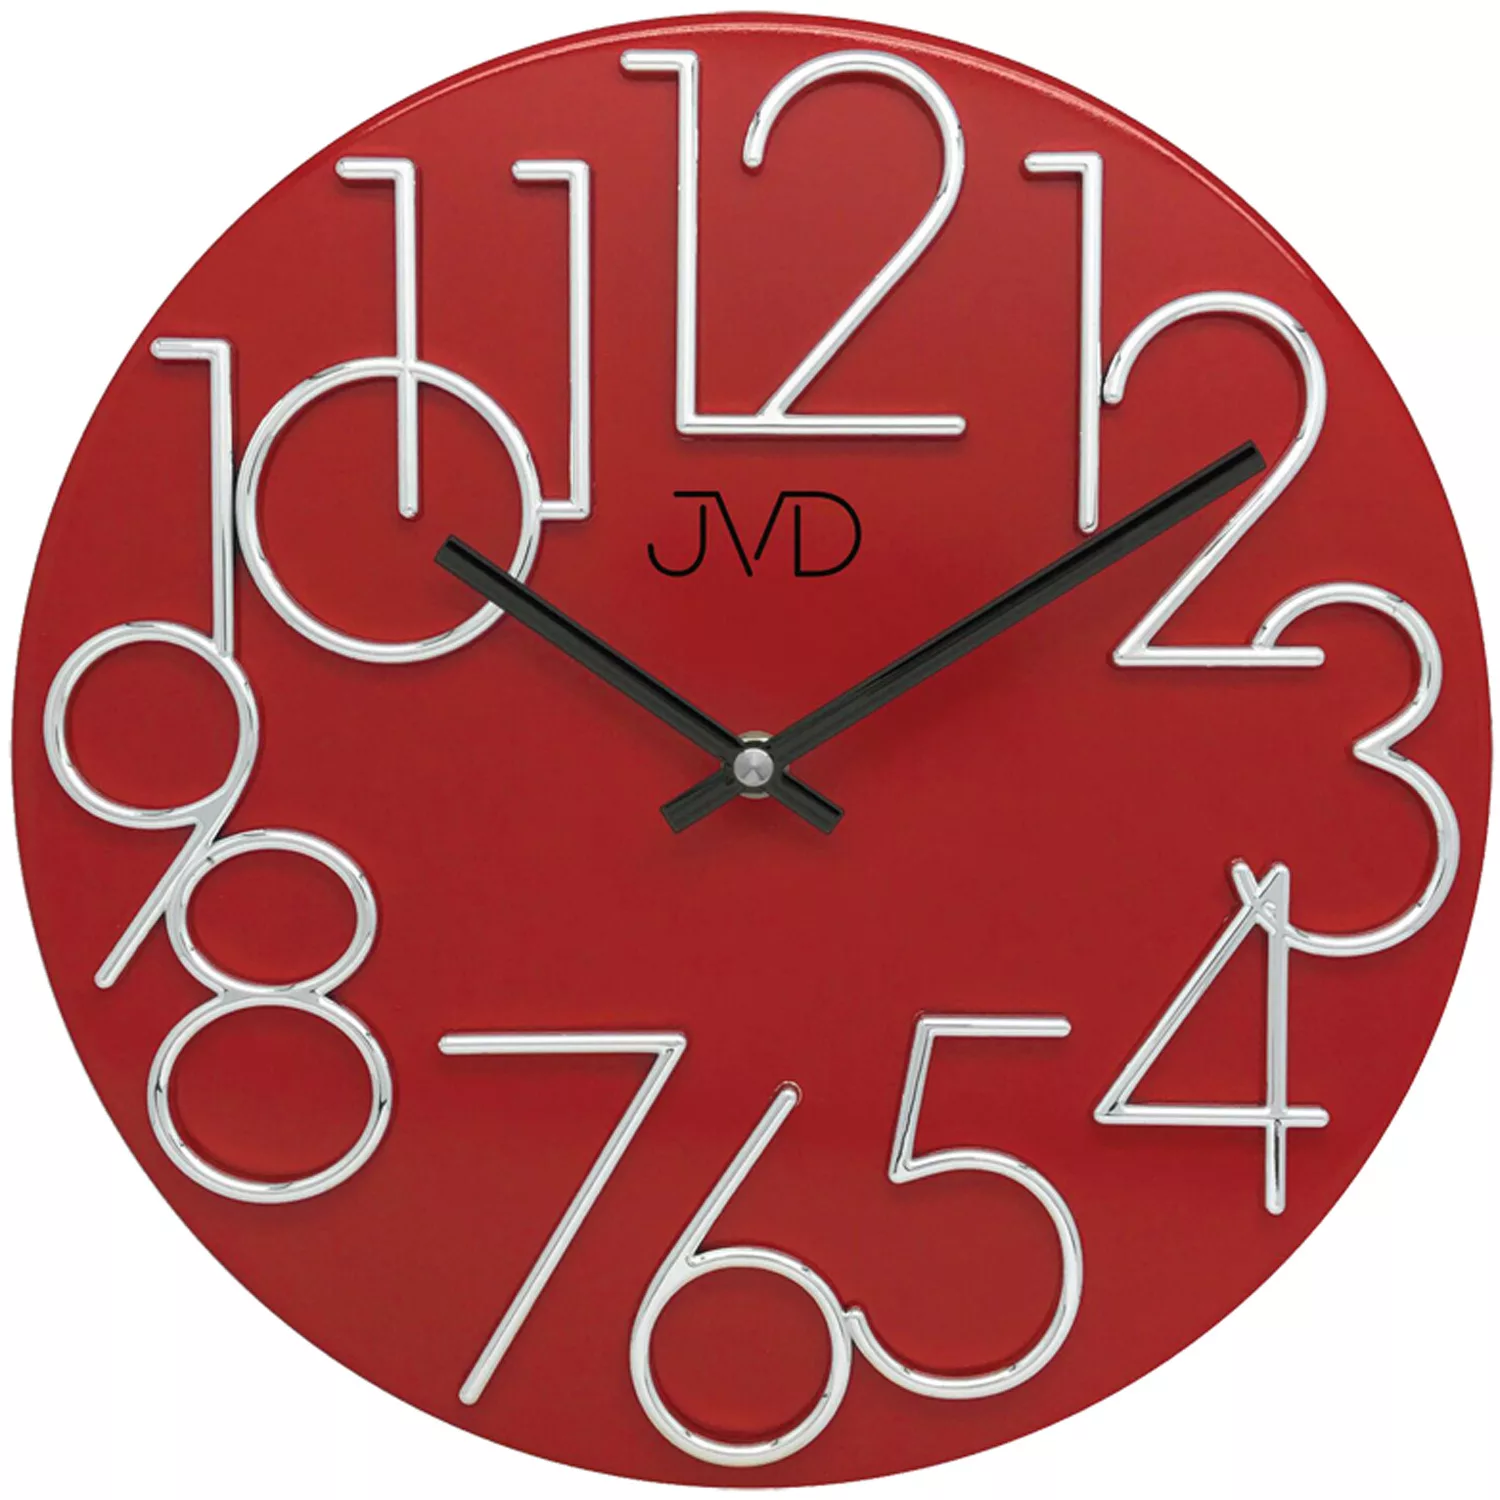 Jvd Ht23.7 Wanduhr Quarz Analog Metall Rot Rund Modern günstig online kaufen